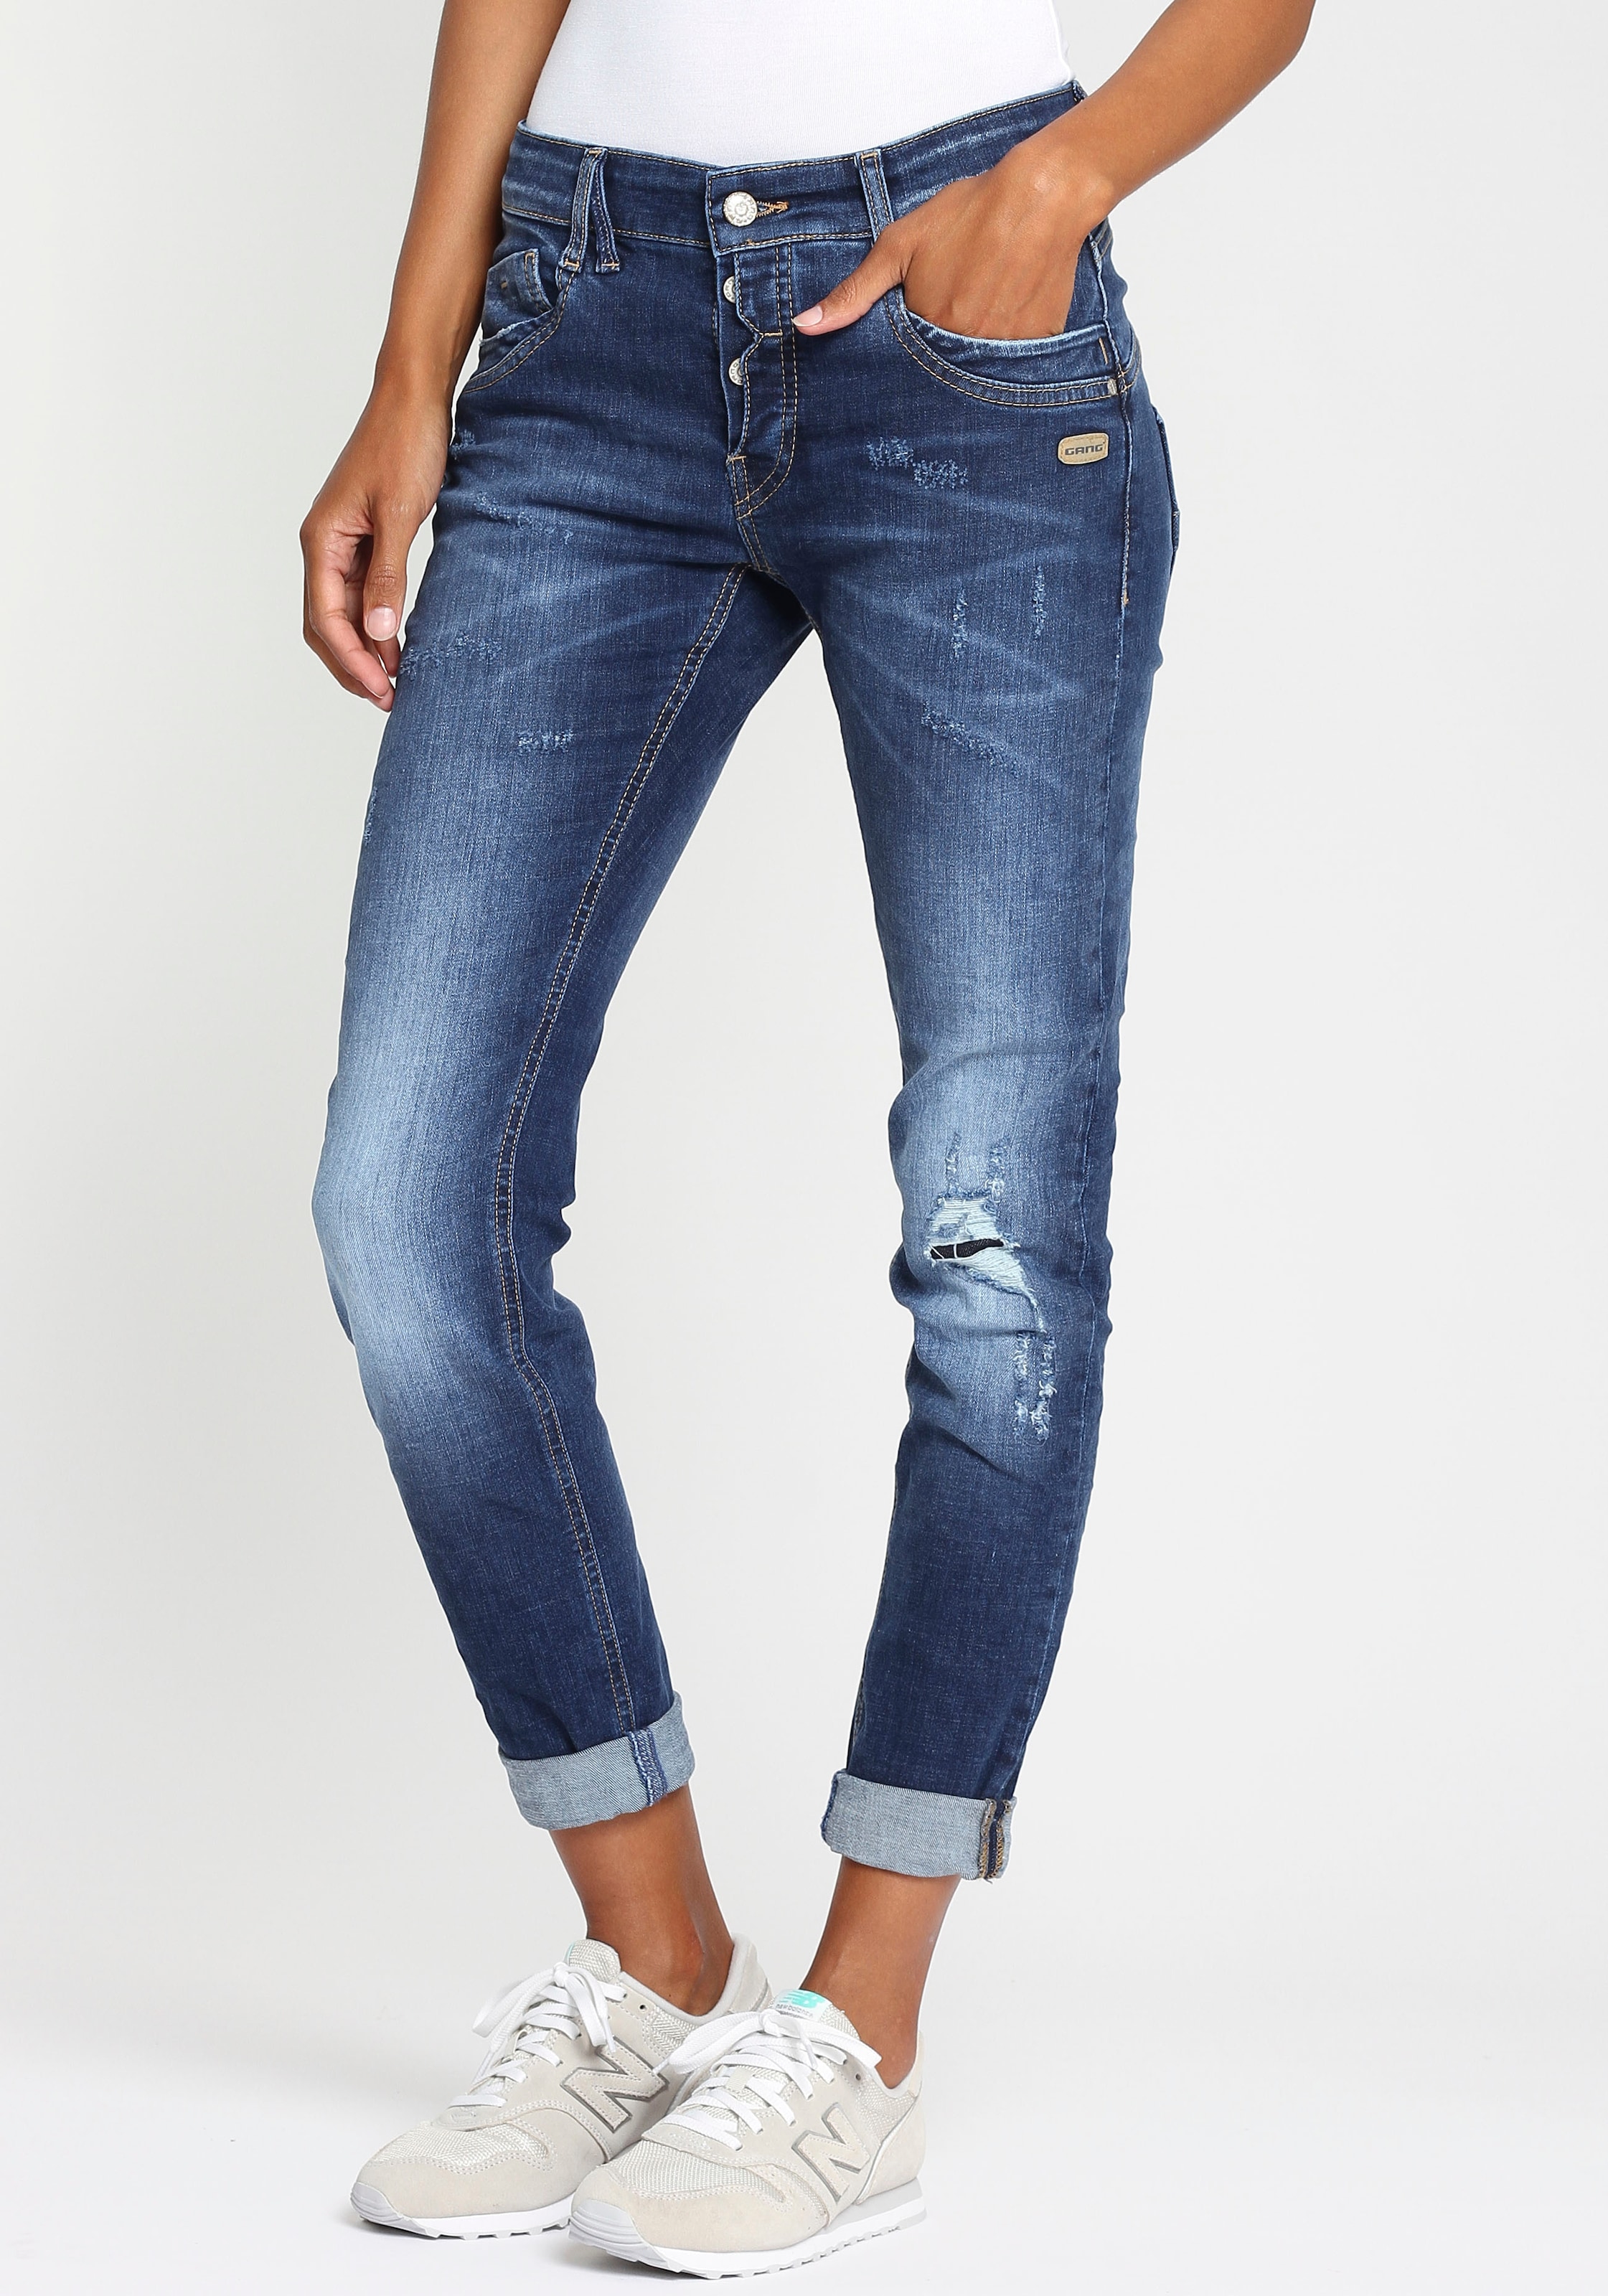 Langgrößen in online kaufen OTTO | Damen-Jeans Jeans bei Schöne